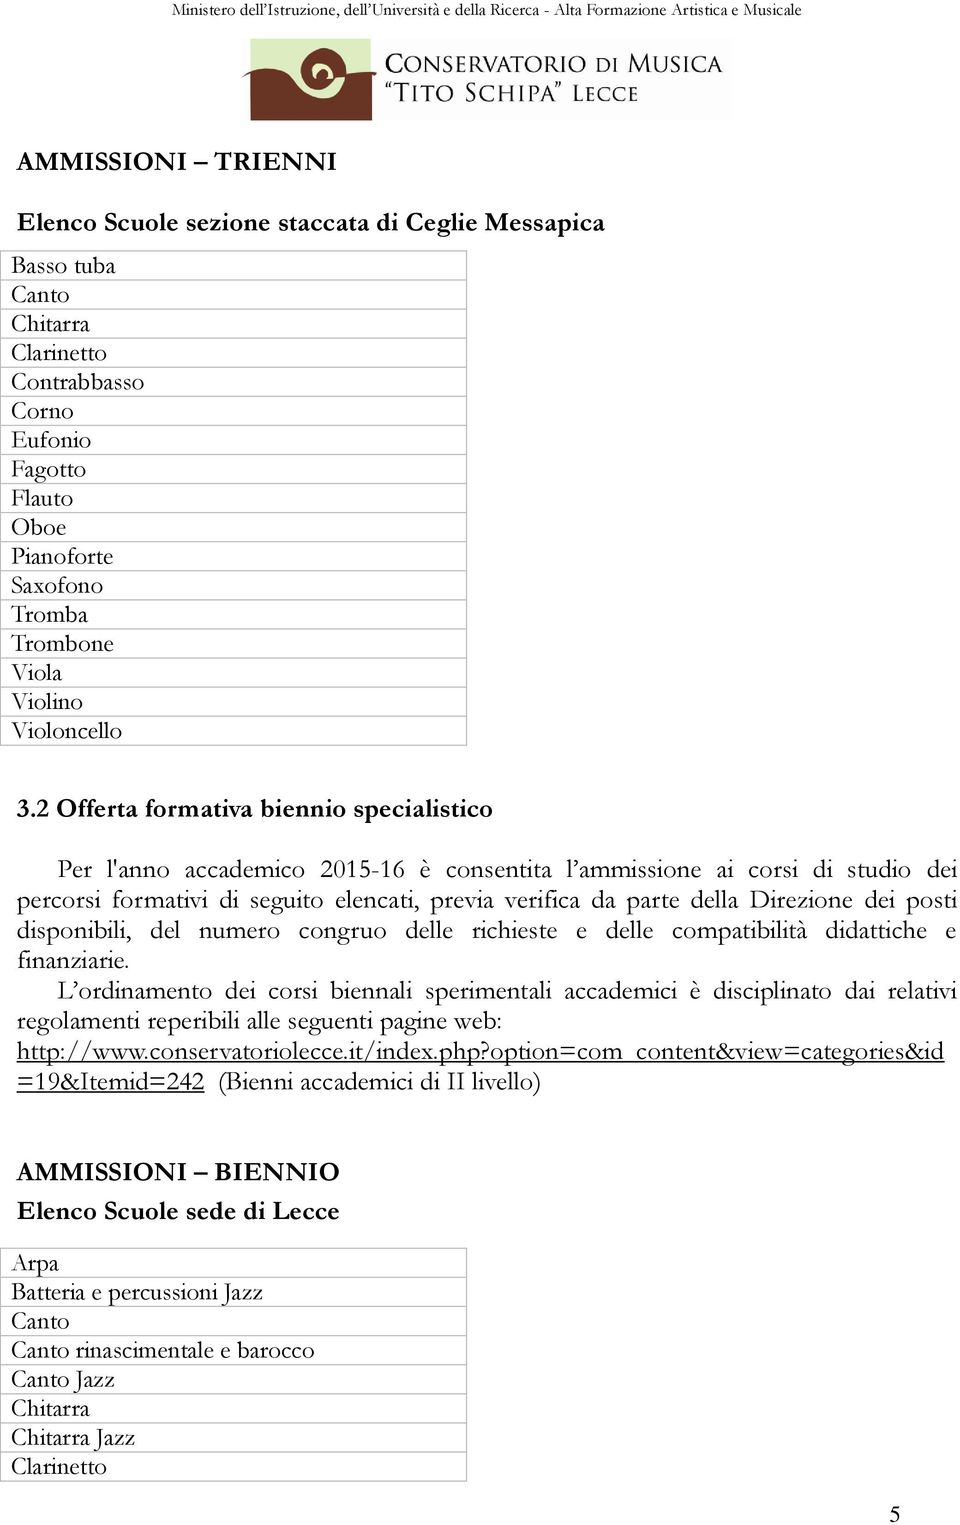 2 Offerta formativa biennio specialistico Per l'anno accademico 2015-16 è consentita l ammissione ai corsi di studio dei percorsi formativi di seguito elencati, previa verifica da parte della